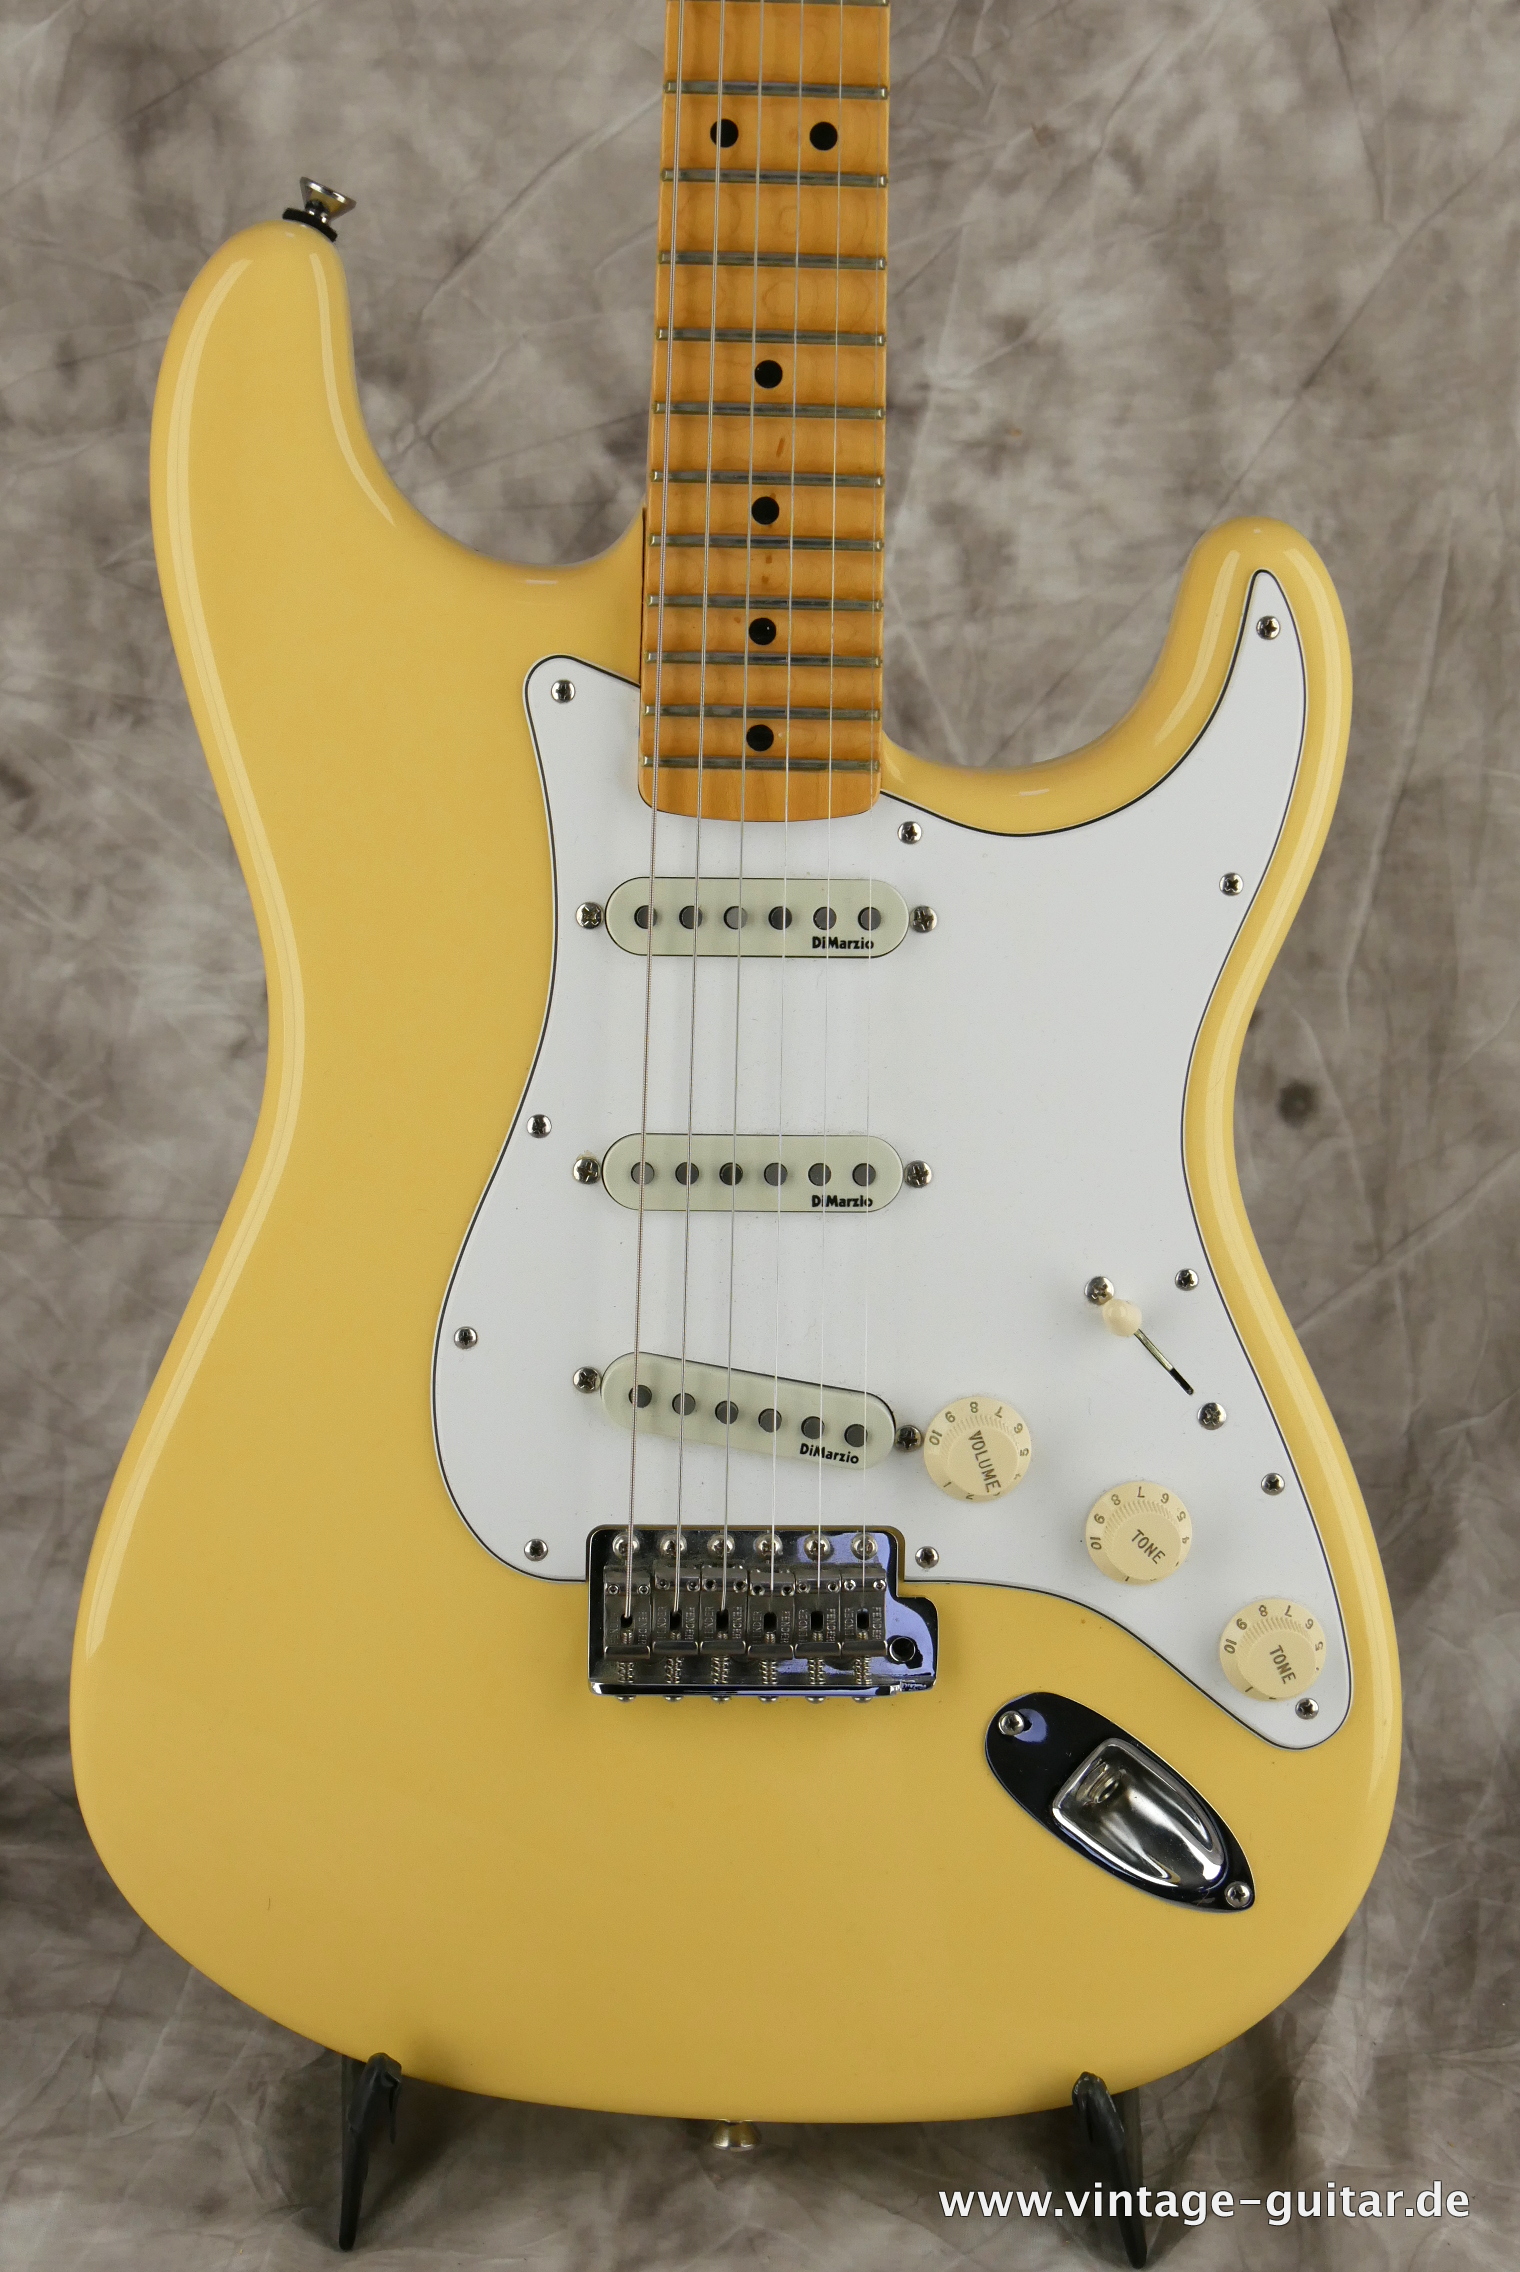 Fender-Stratocaster-Yngwie_malmsteen-2007-scalloped-002.JPG